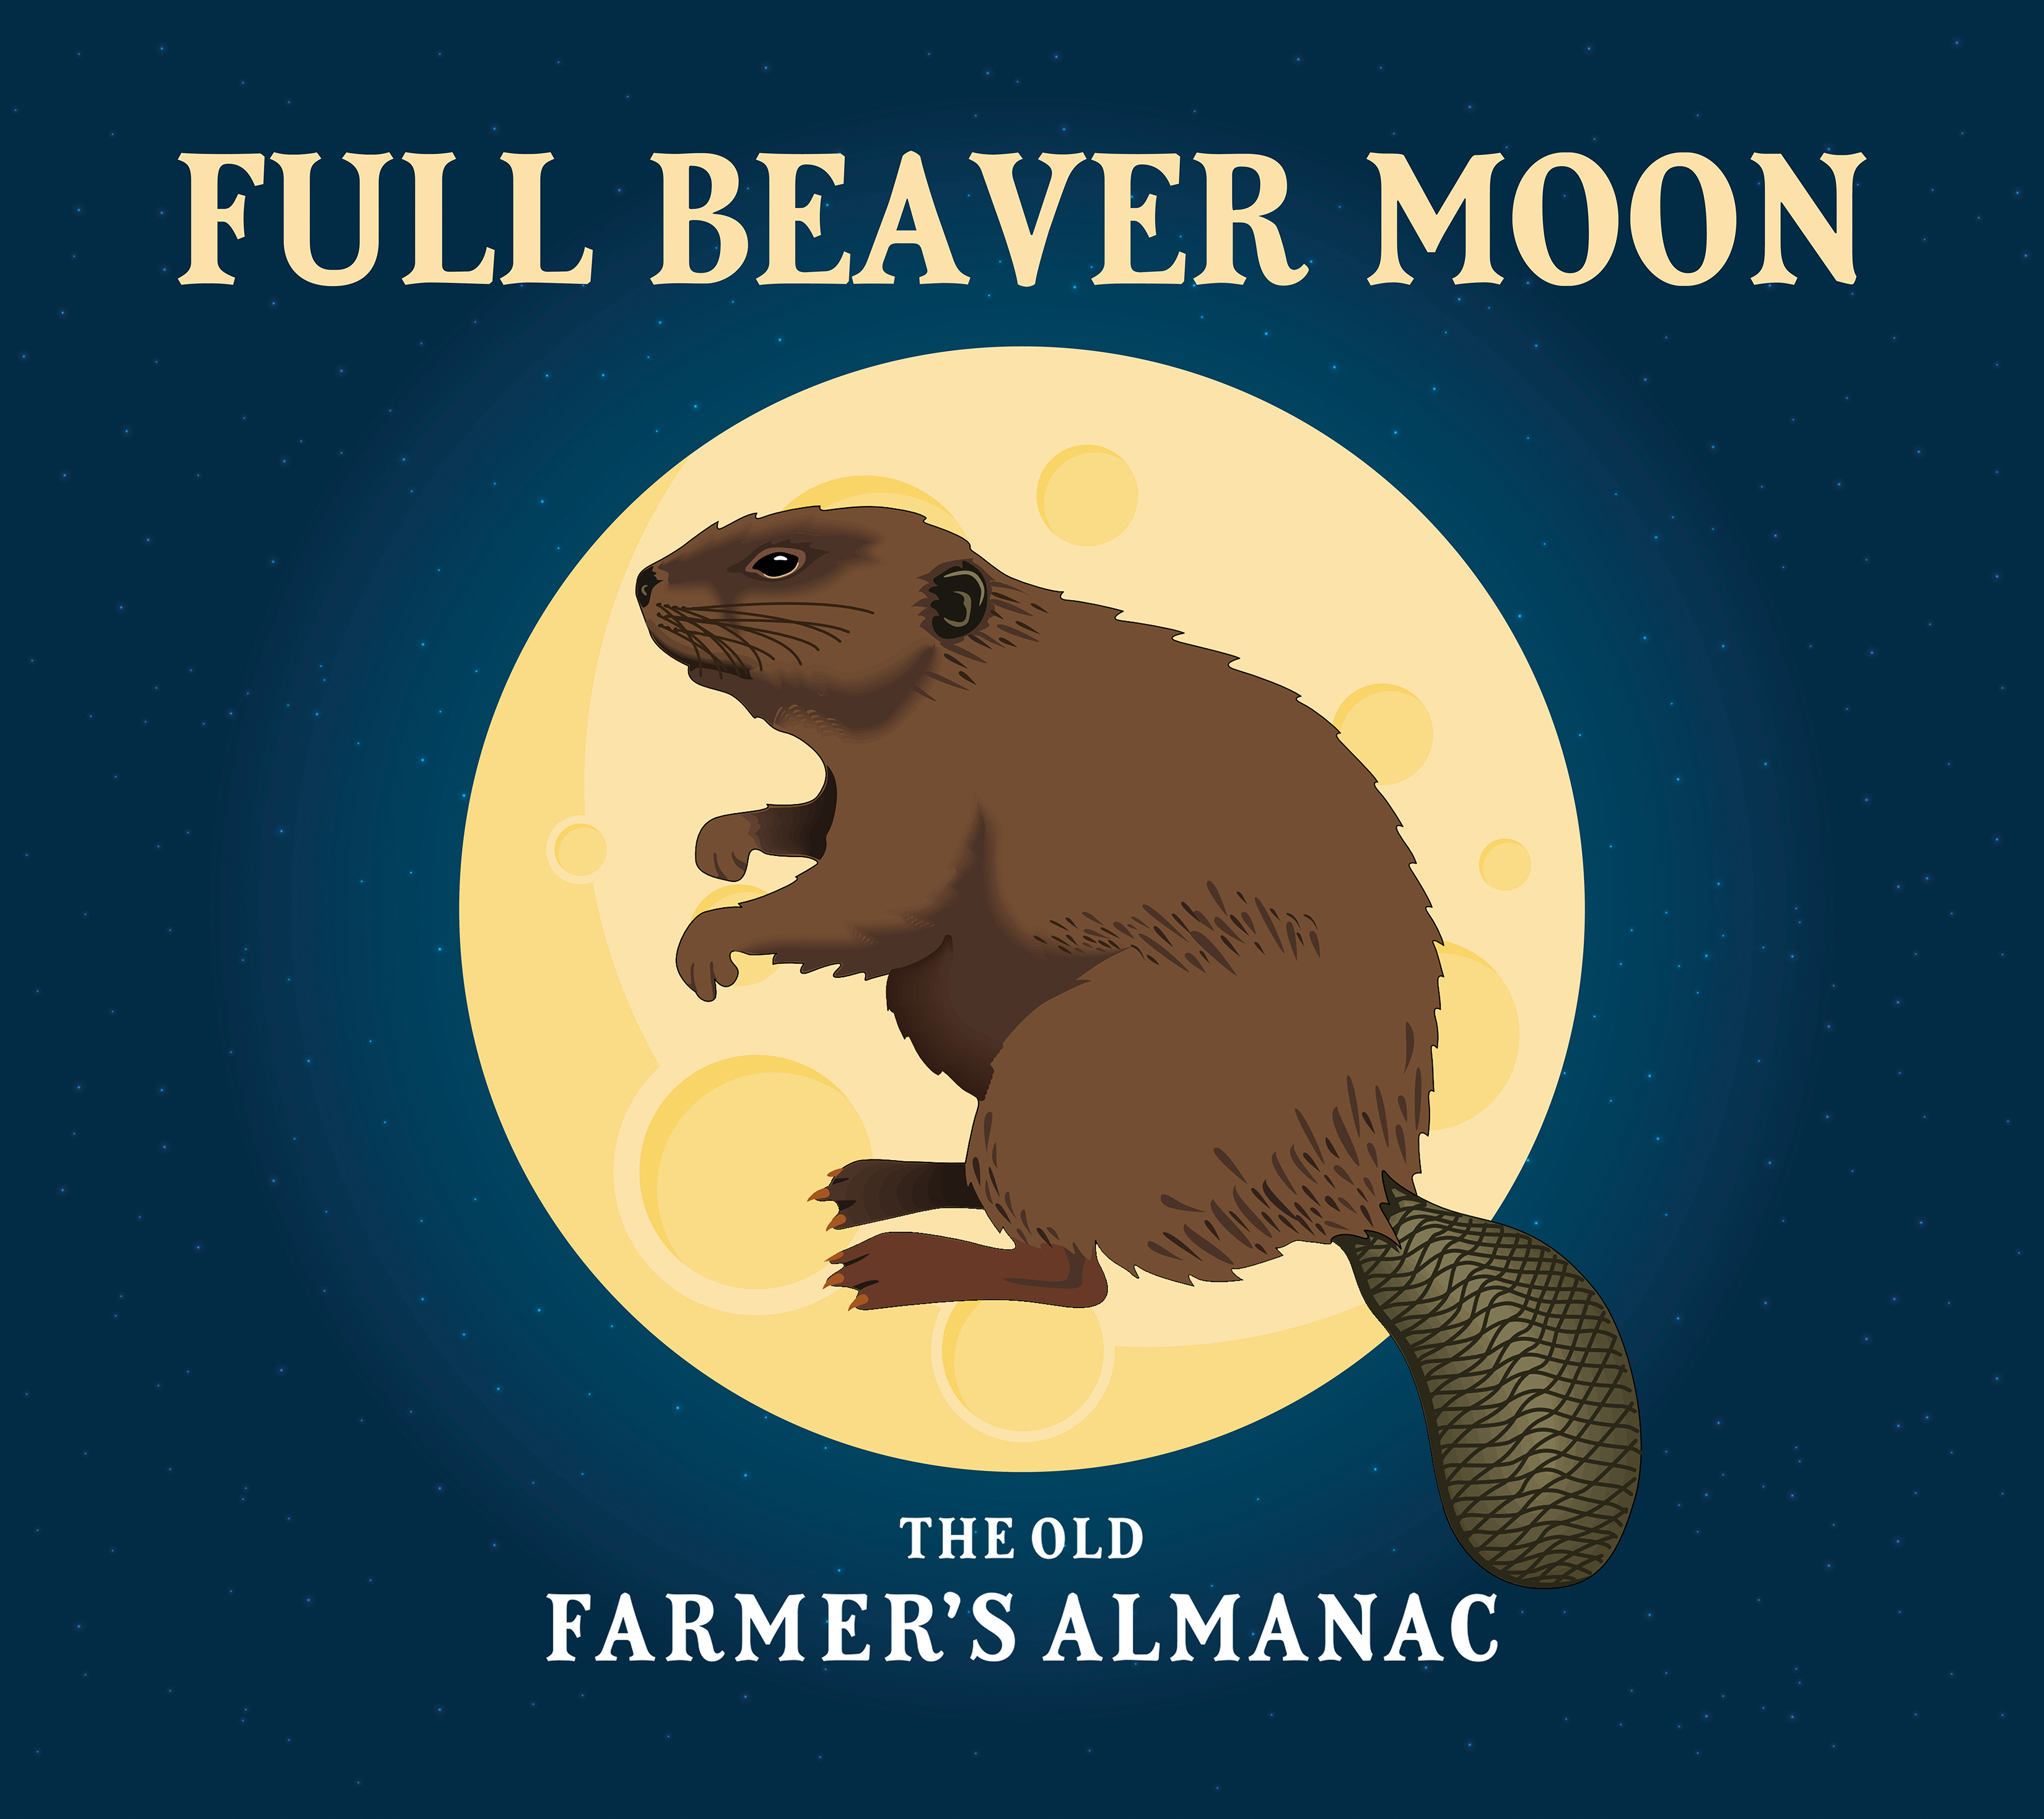 The Full Beaver Moon: Full Moon for November 2019 | The Old Farmer's Almanac